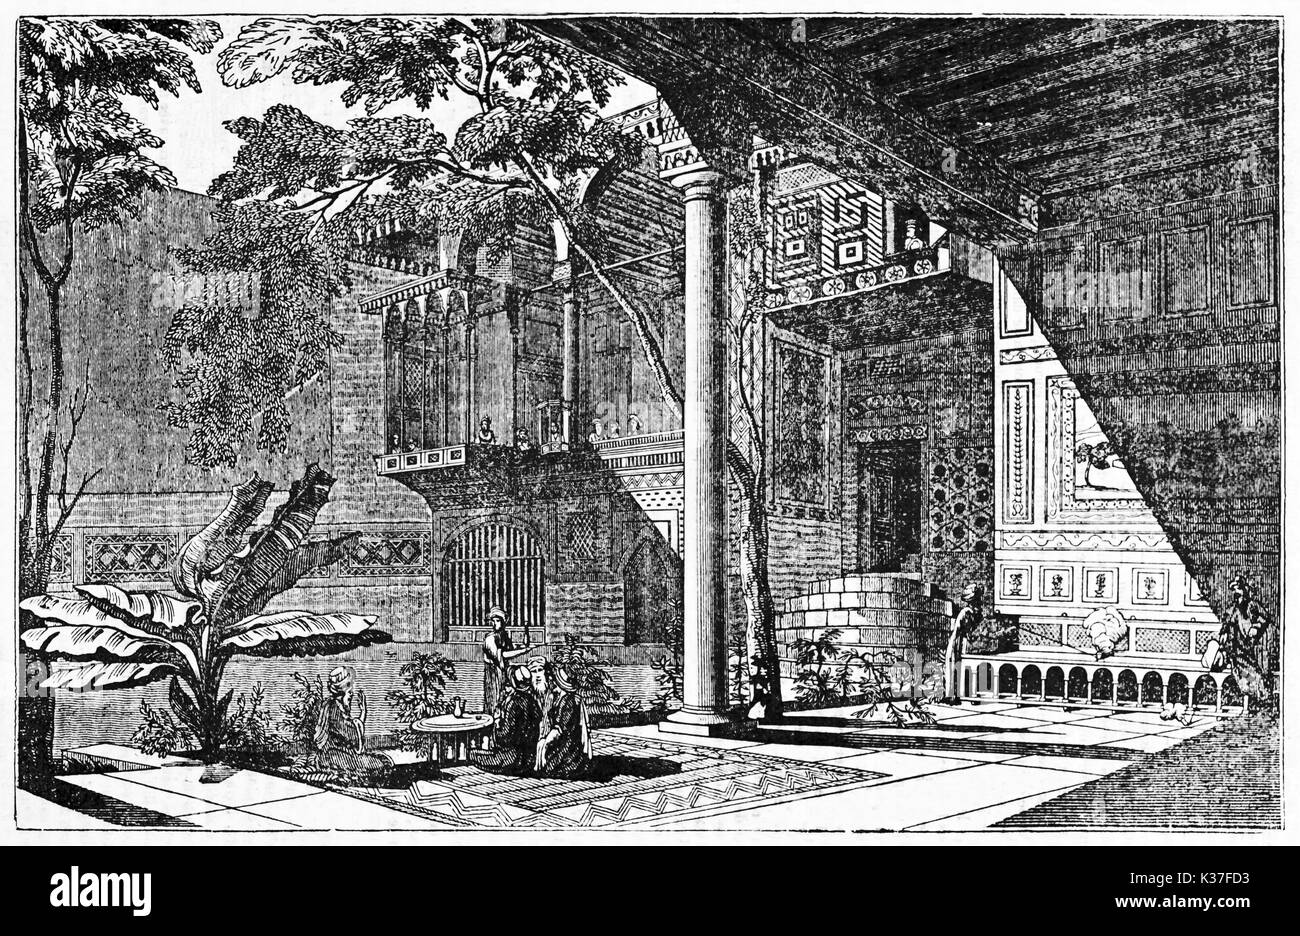 Ancienne majestueuse cour intérieure d'une maison arabe au Caire Égypte atteindre de milieu décoration orientale et la végétation. Vieille Illustration d'auteur non identifié, le Magasin Pittoresque, Paris 1834 Banque D'Images